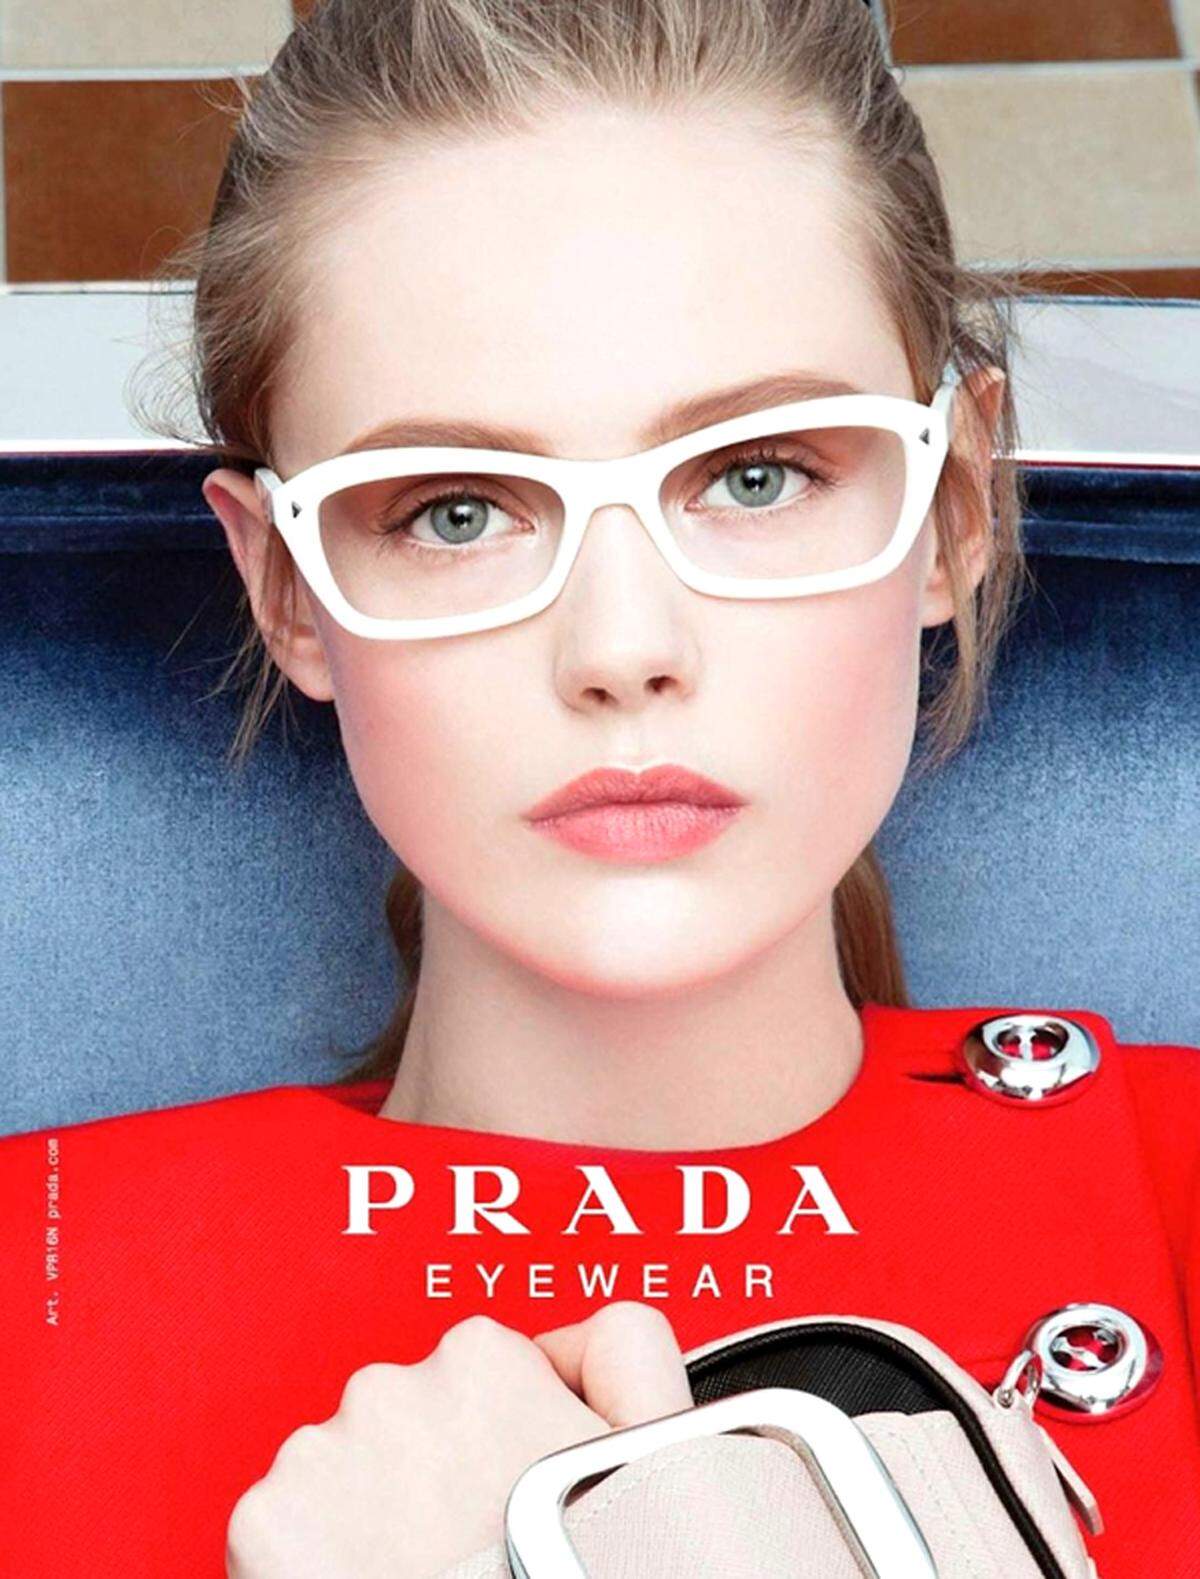 Dies ist nicht der erste Verstoß, bereits im August 2012 war in der chinesischen Vogue das 15-jährige Model Ondria Hardin zu sehen, die auch schon von Prada engagiert wurde. Ein Monat später wurde erneut ein zu junges Model abgelichtet.